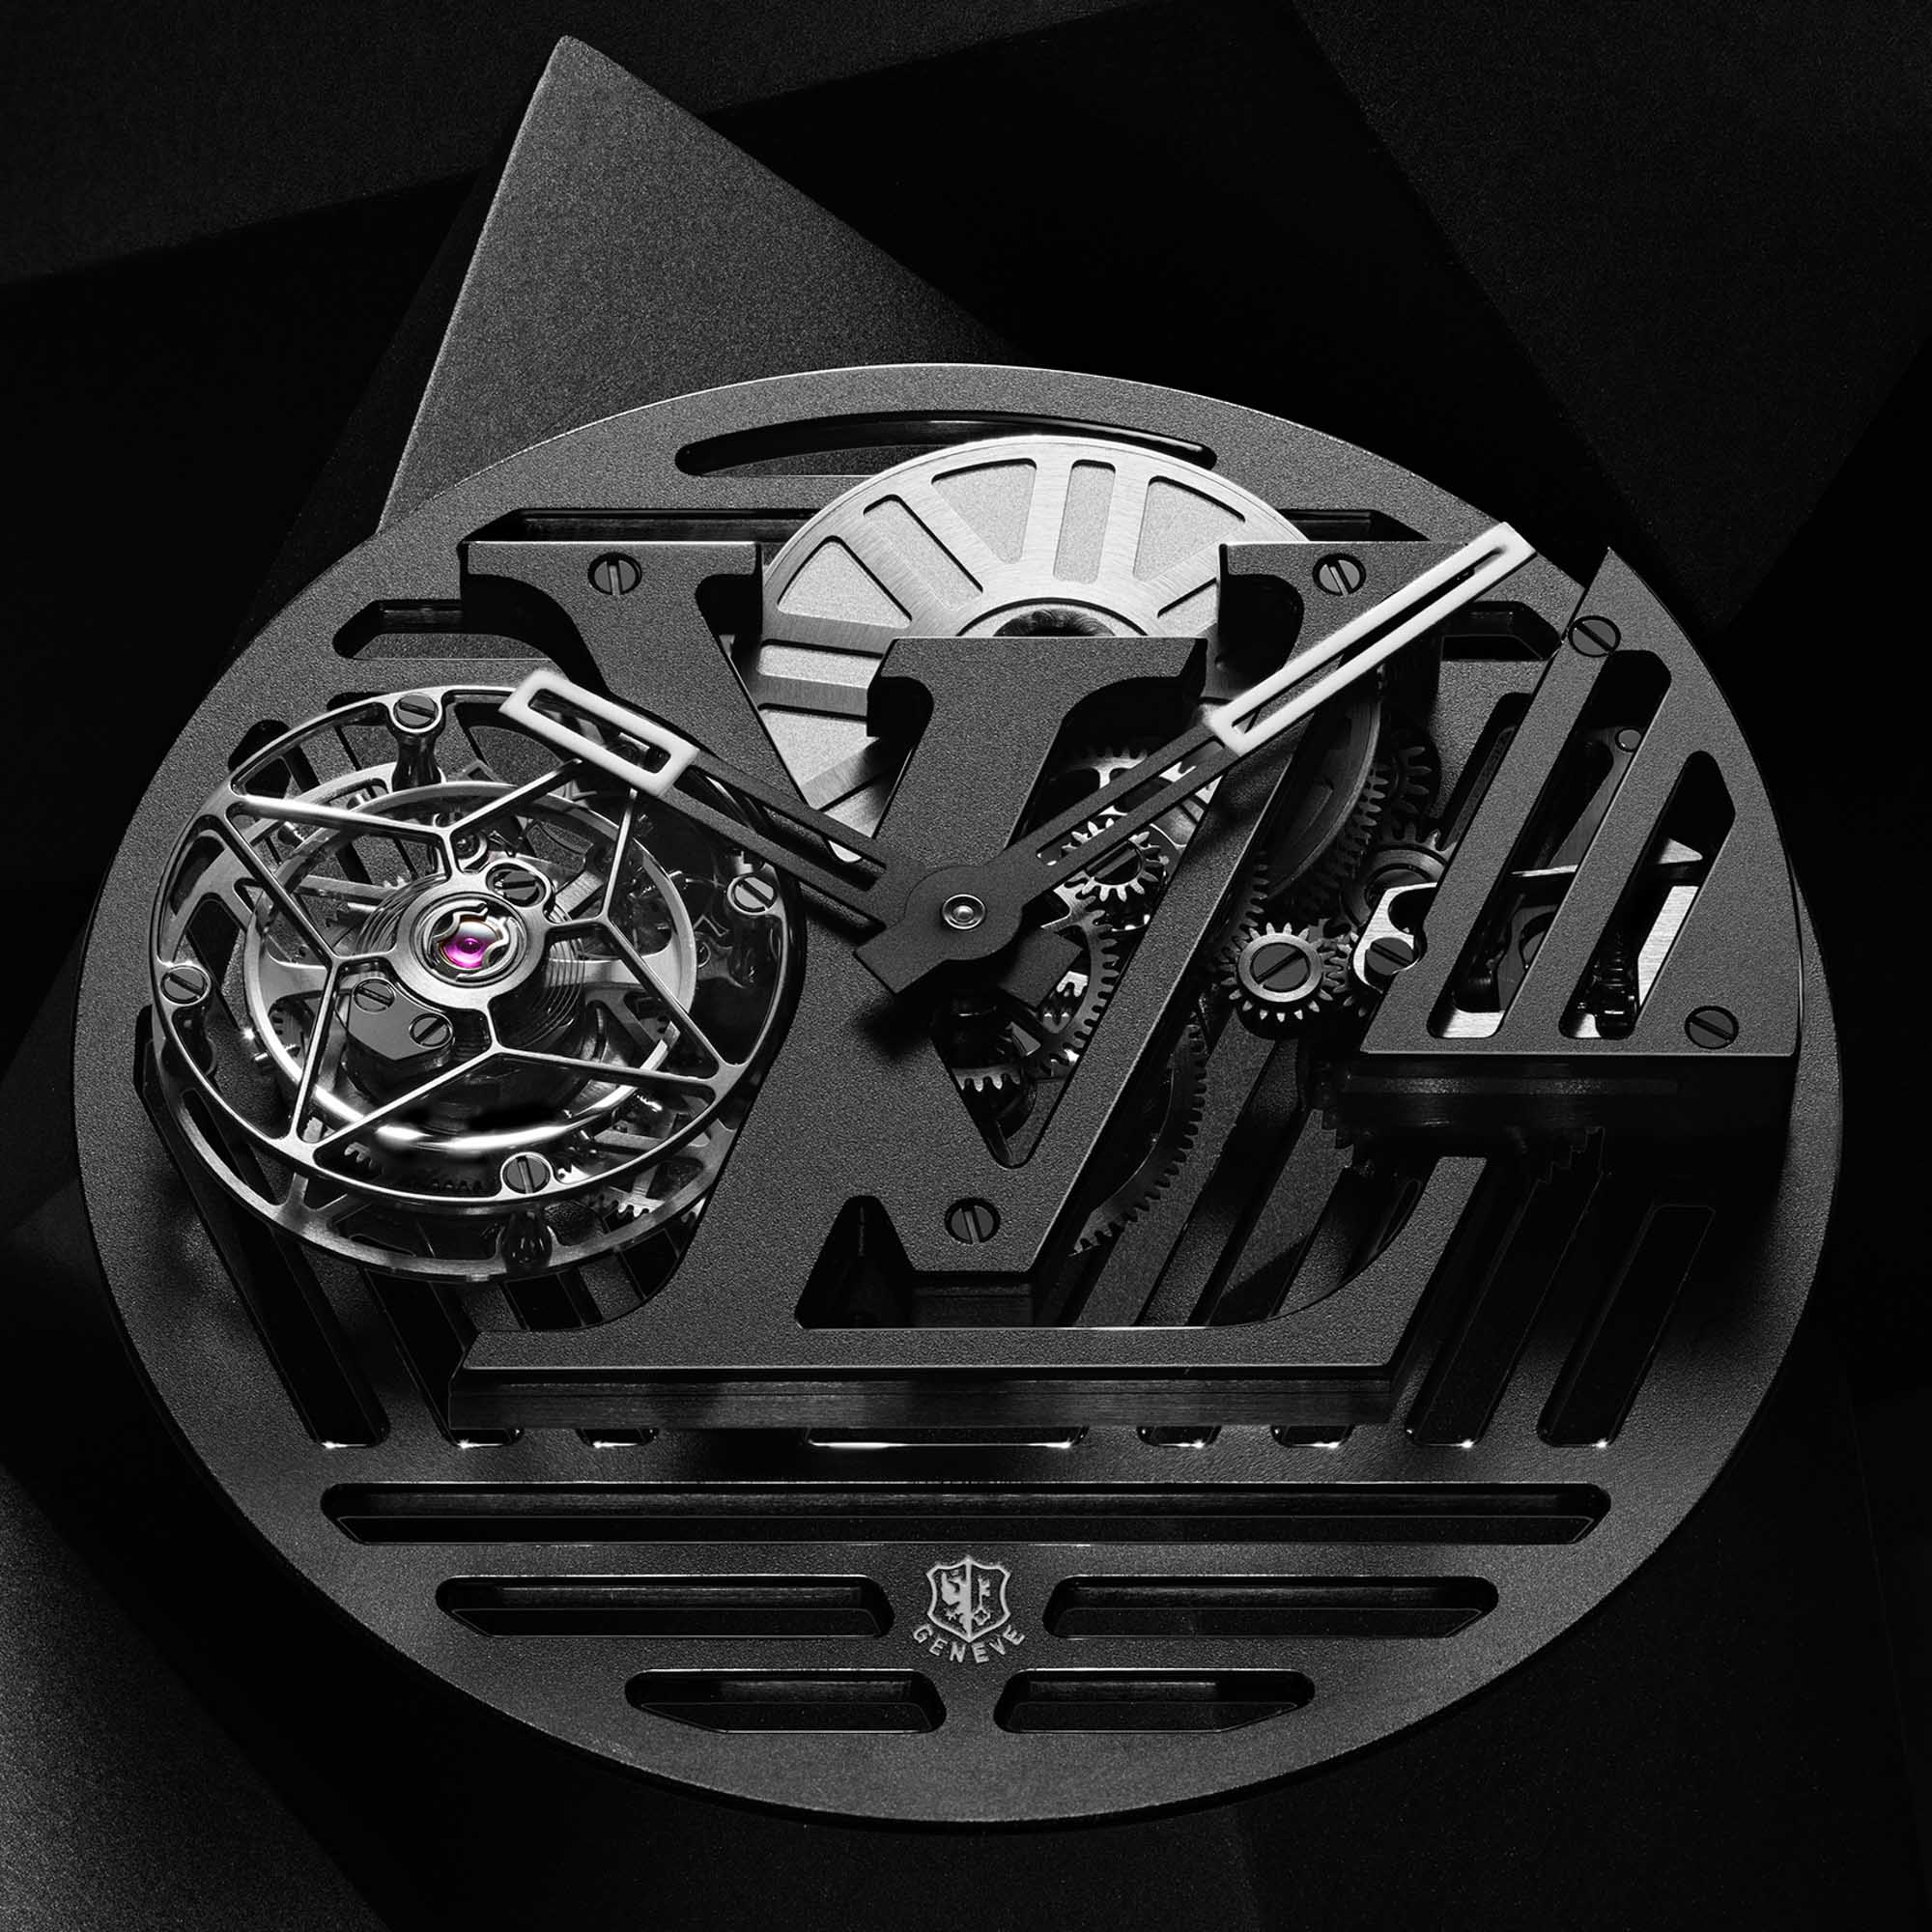 Louis Vuitton's New High-Tech Watches